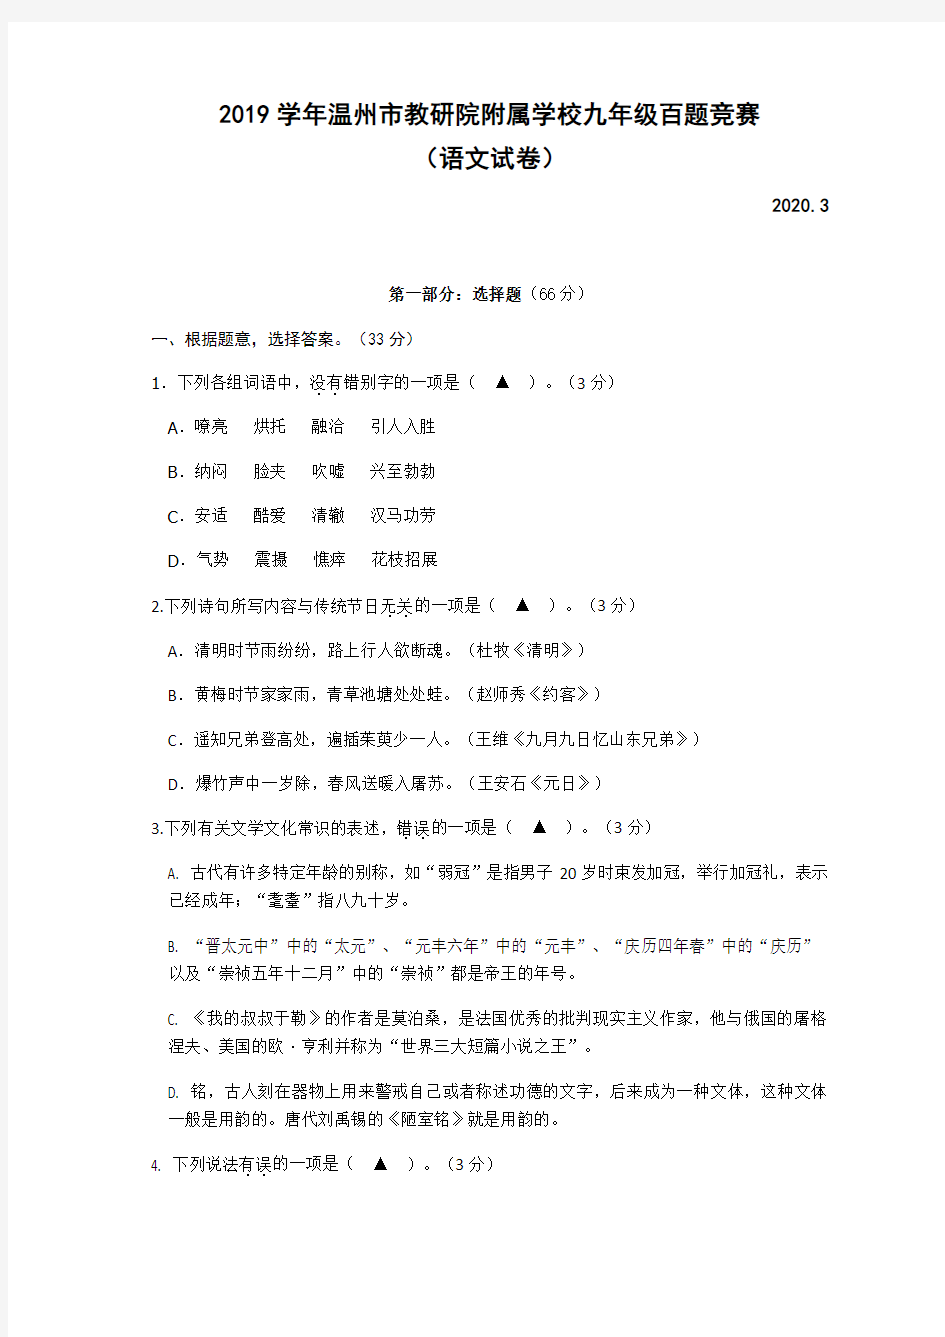 浙江省温州市教研院附属学校2020年九年级百题竞赛语文考试试卷(无答案)